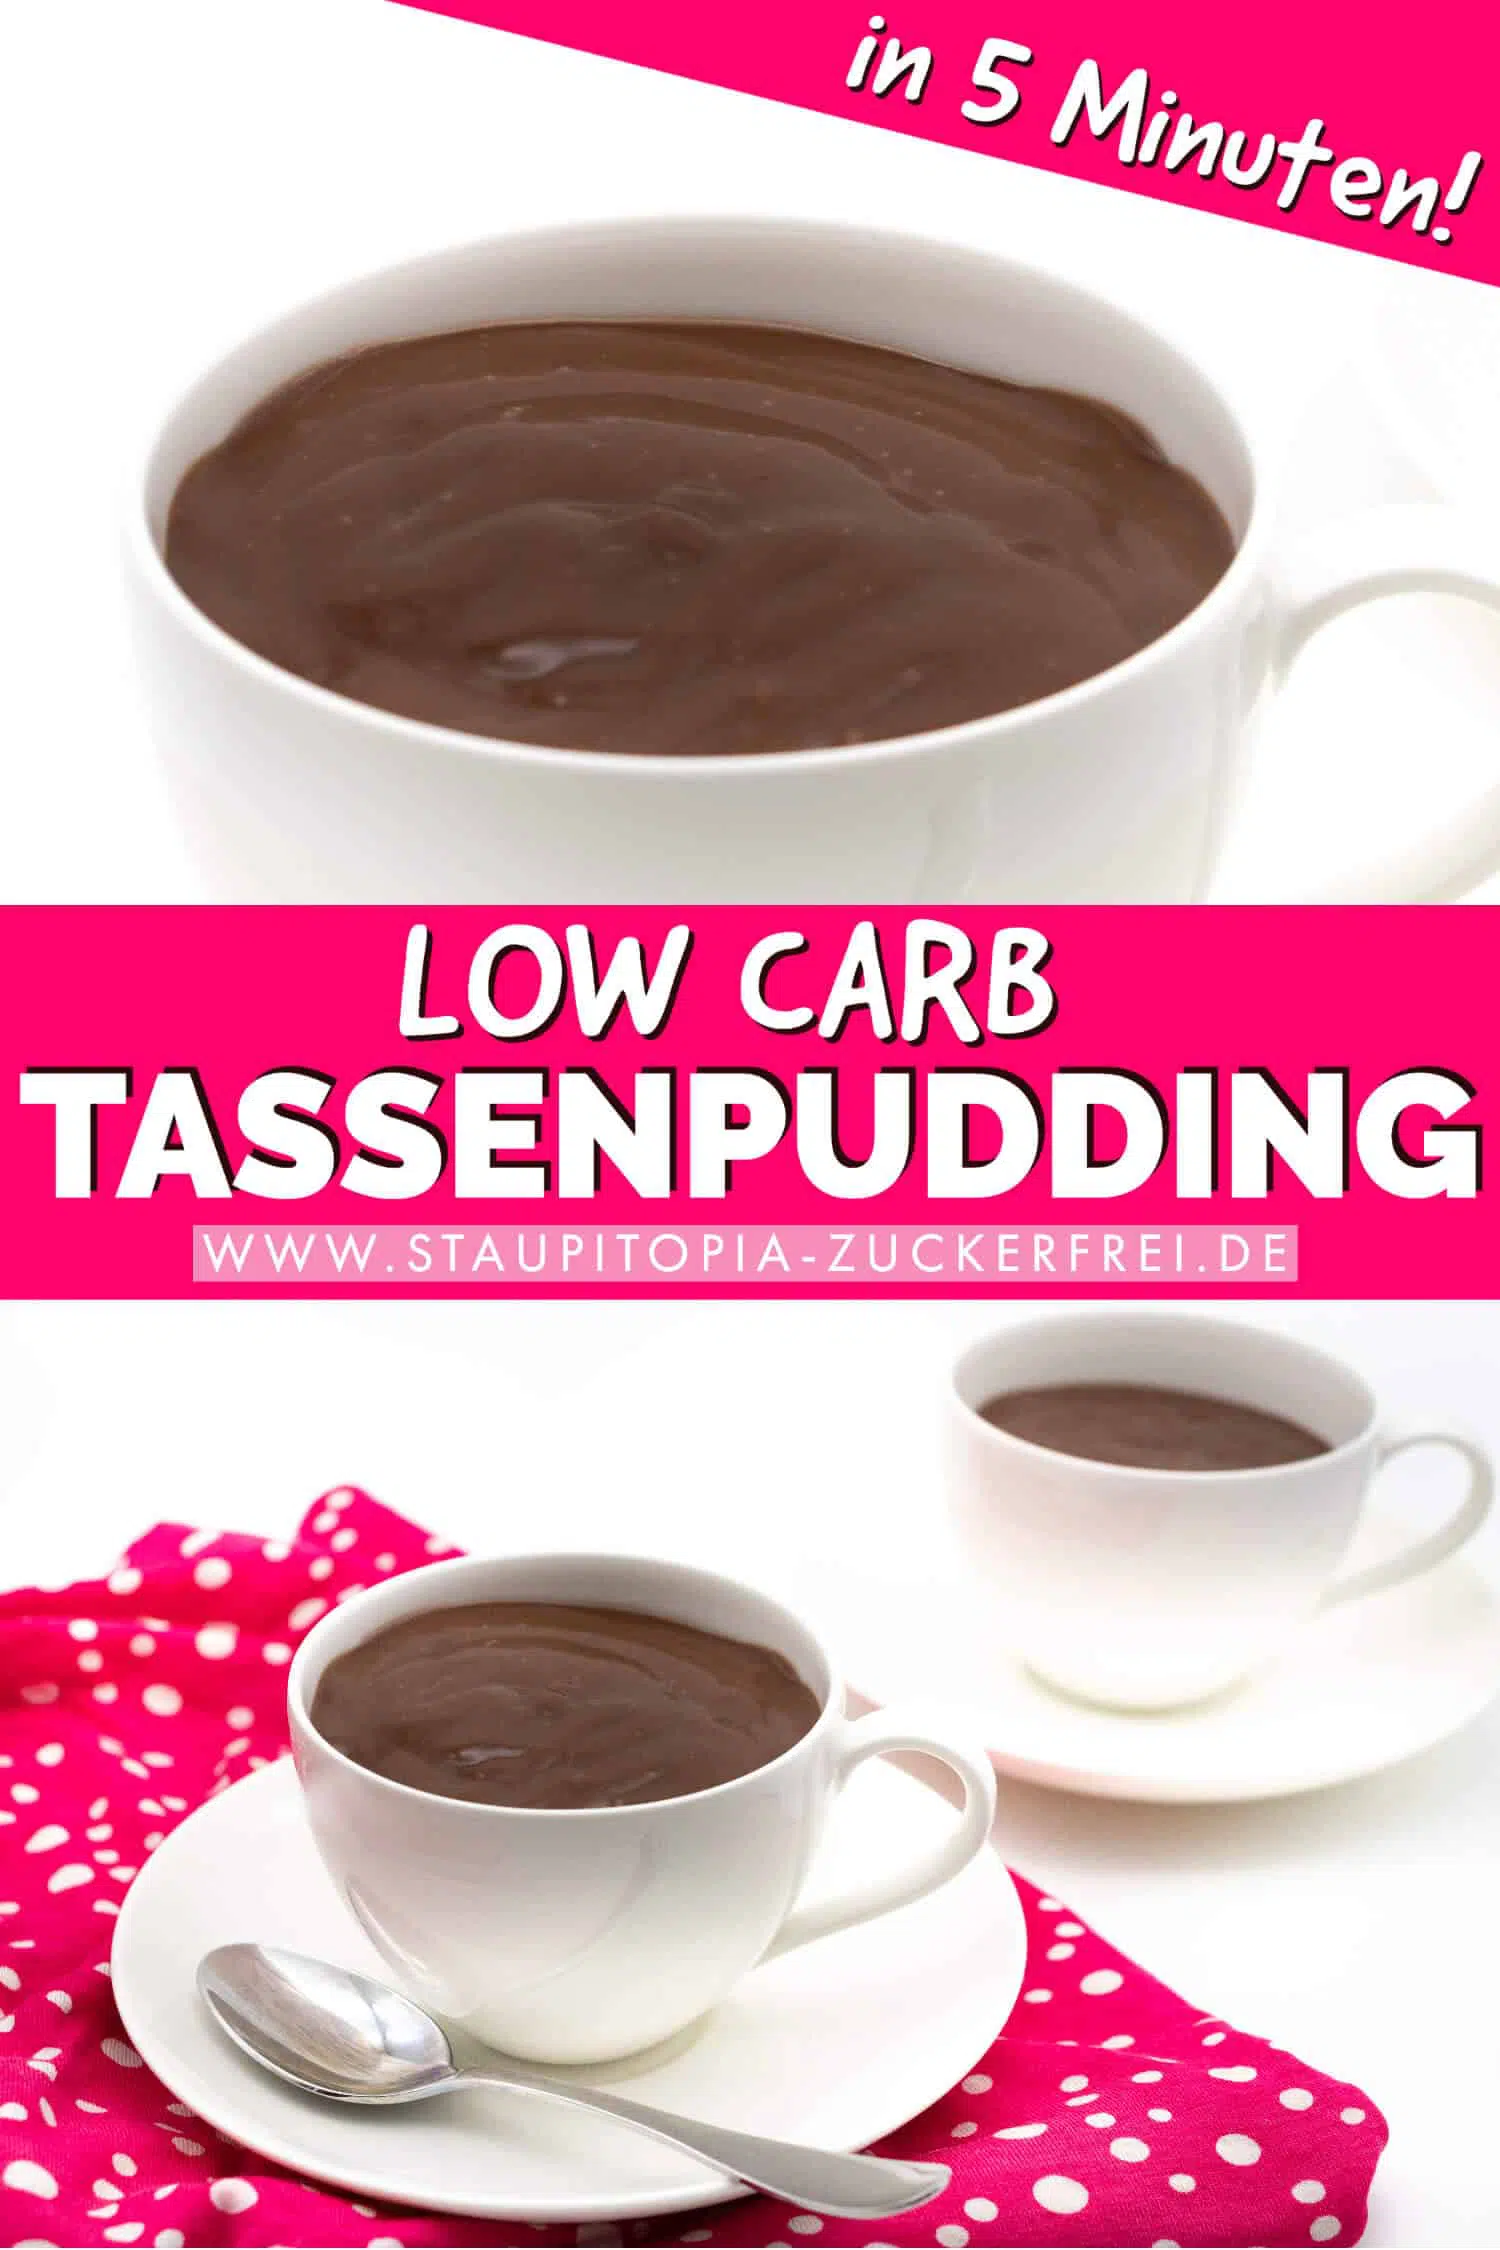 Low Carb Tassenpudding ohne Zucker selber machen